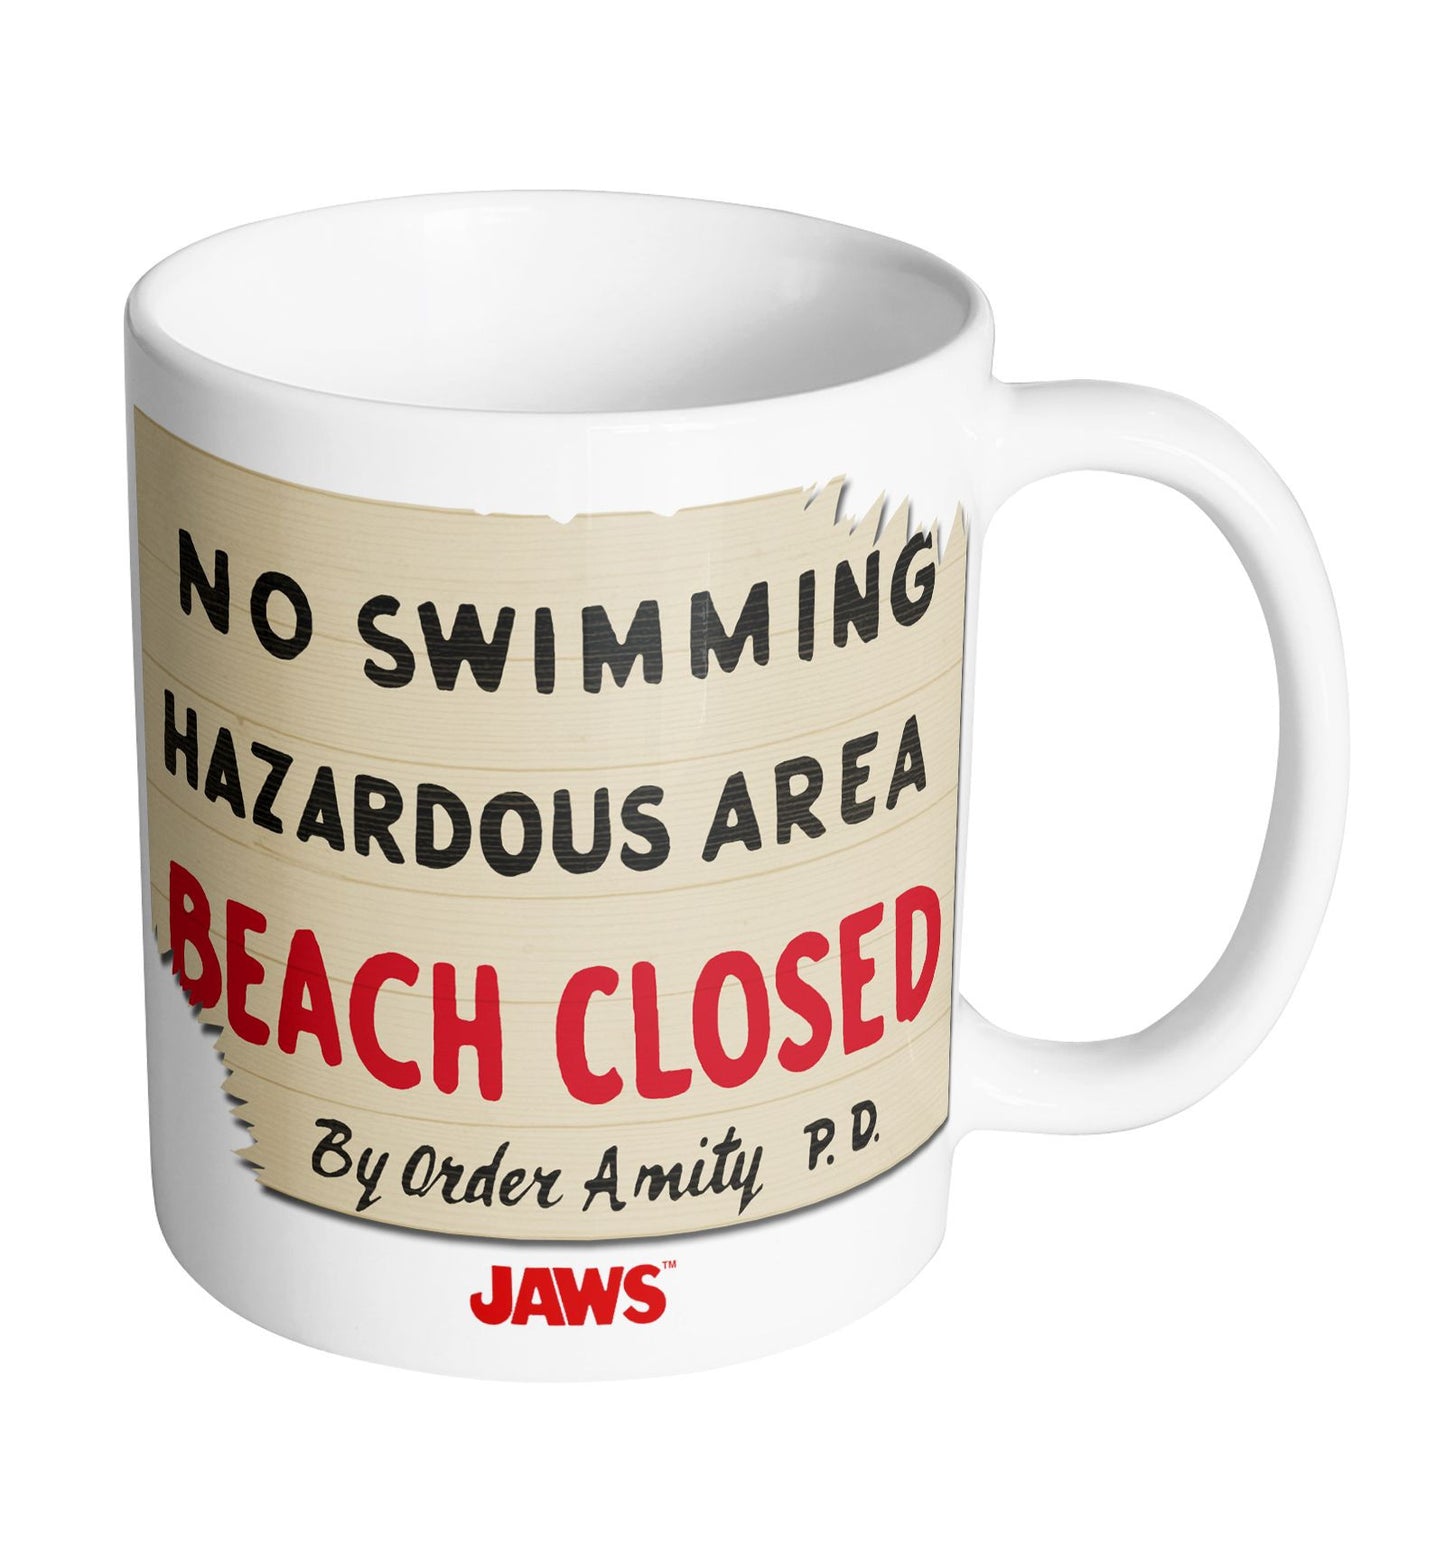 Mug Jaws - Beach Closed